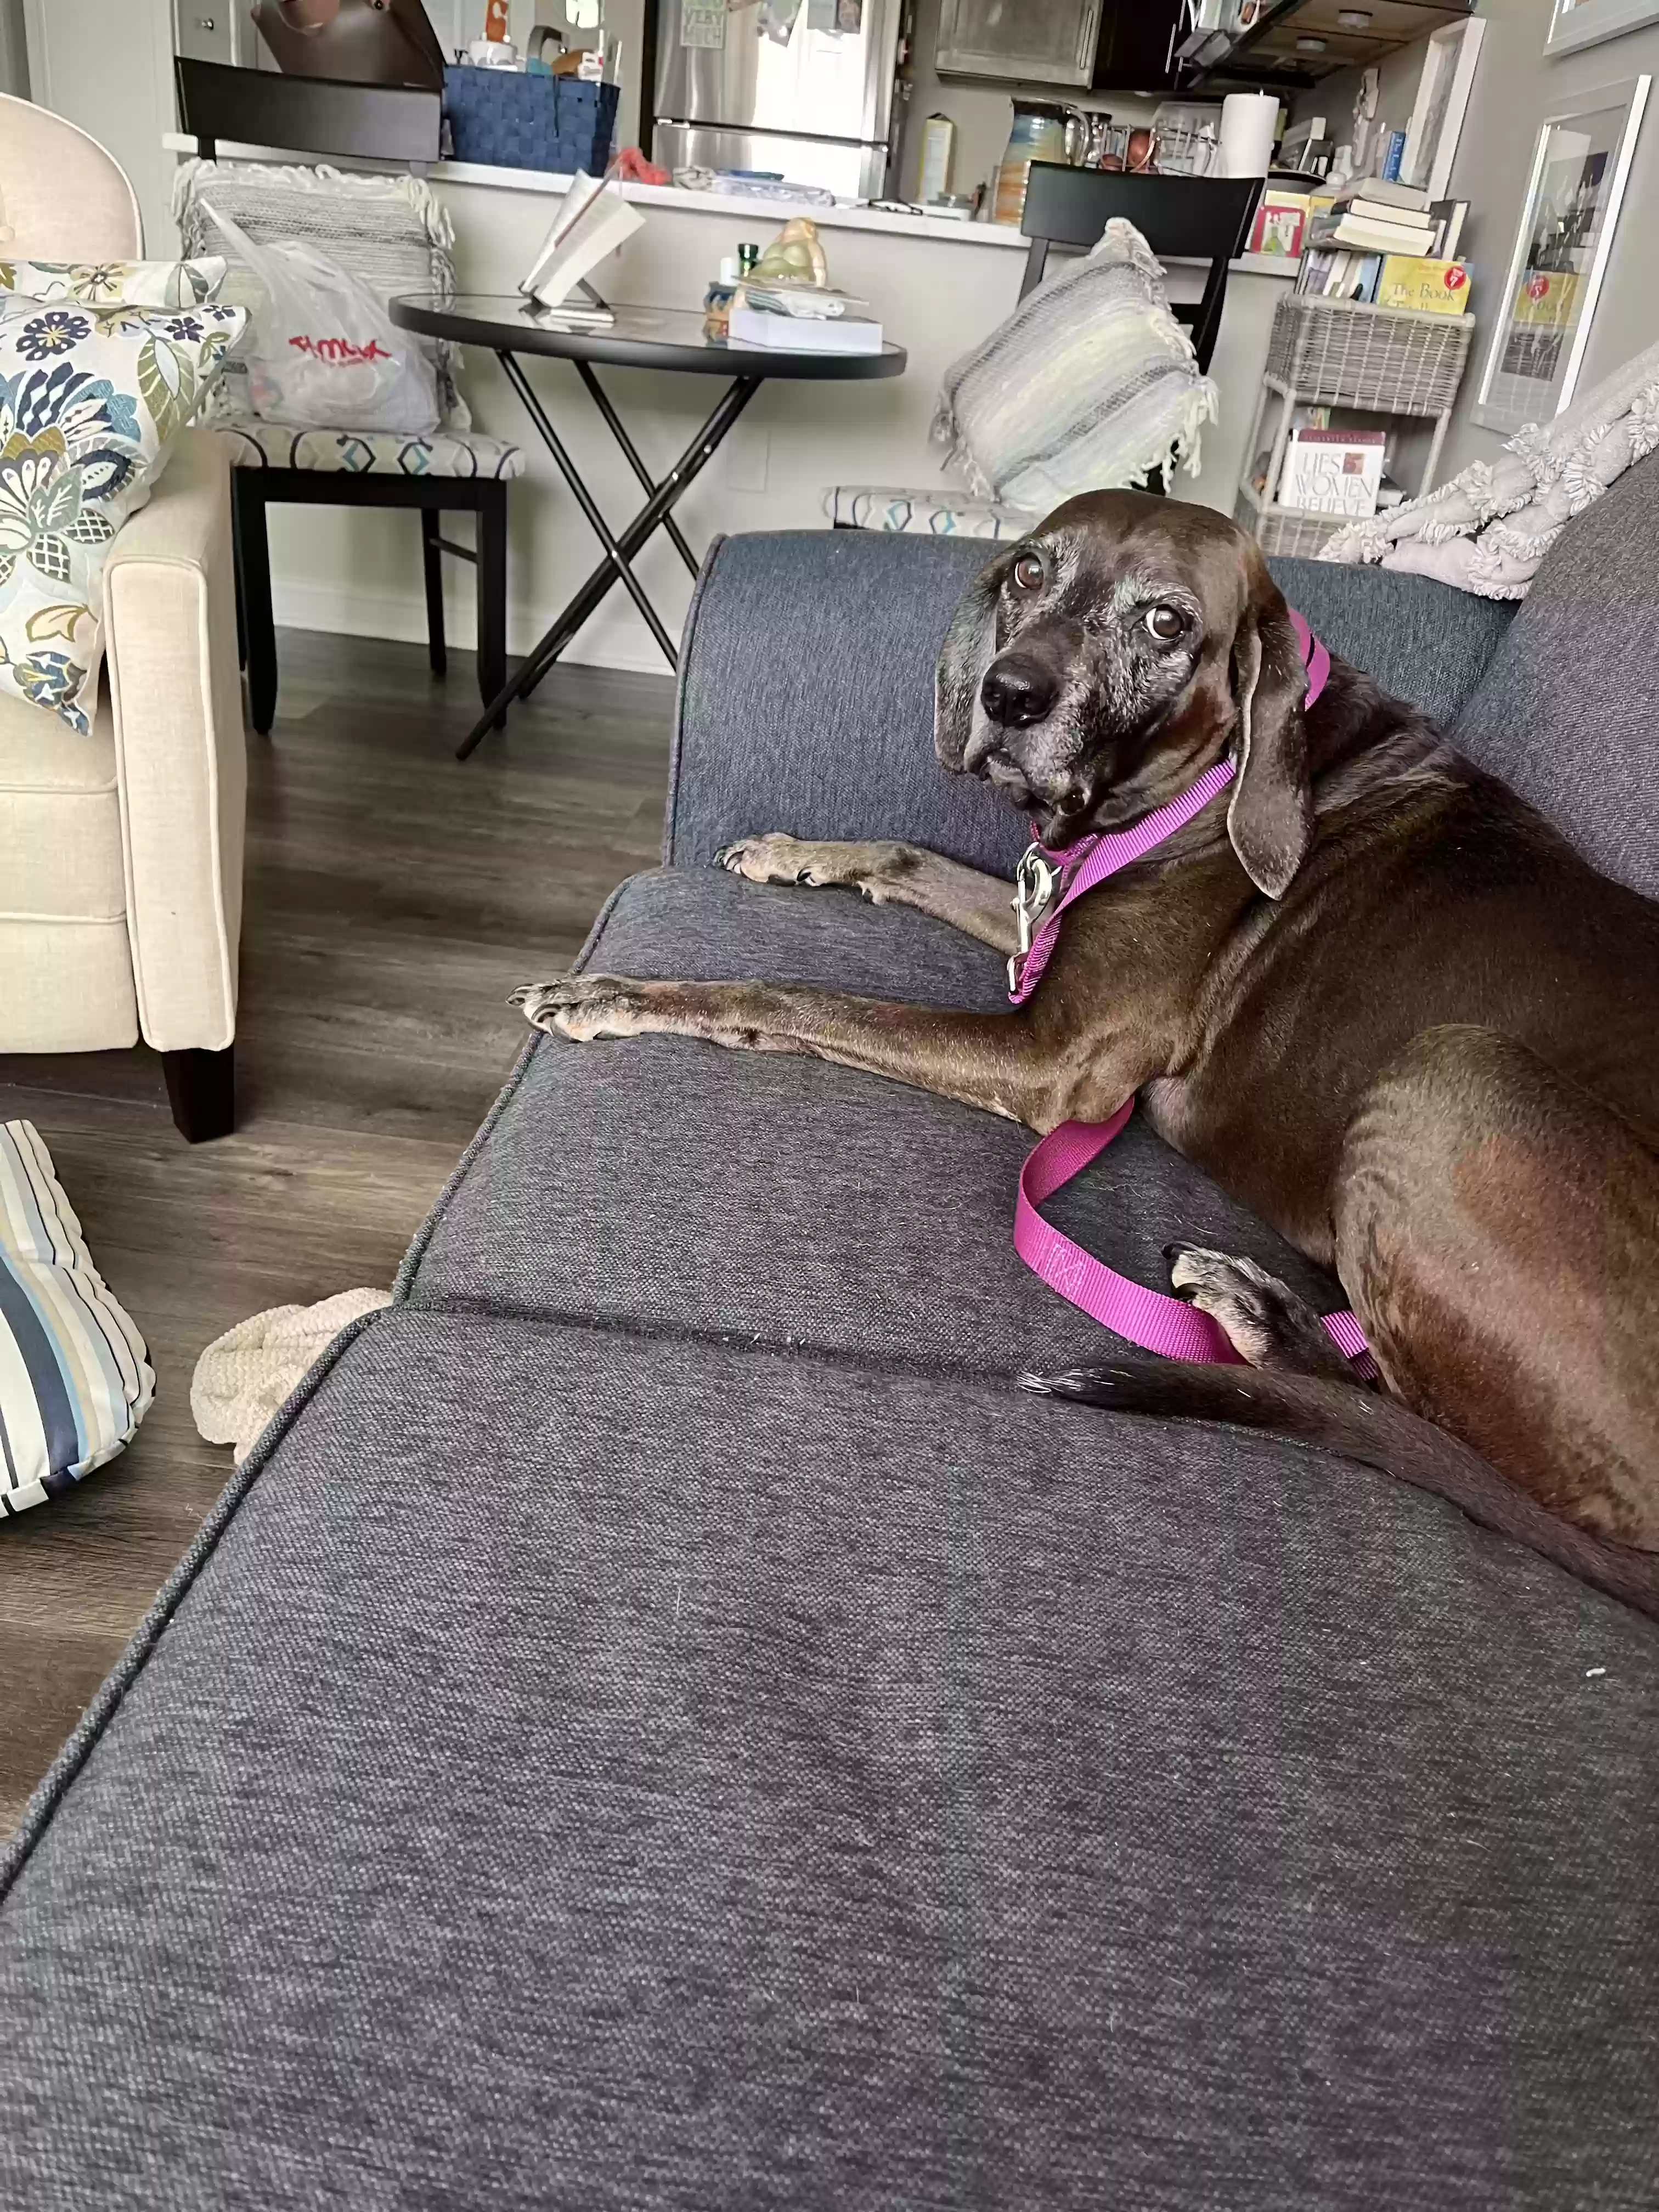 adoptable Dog in Venice,FL named Gracie